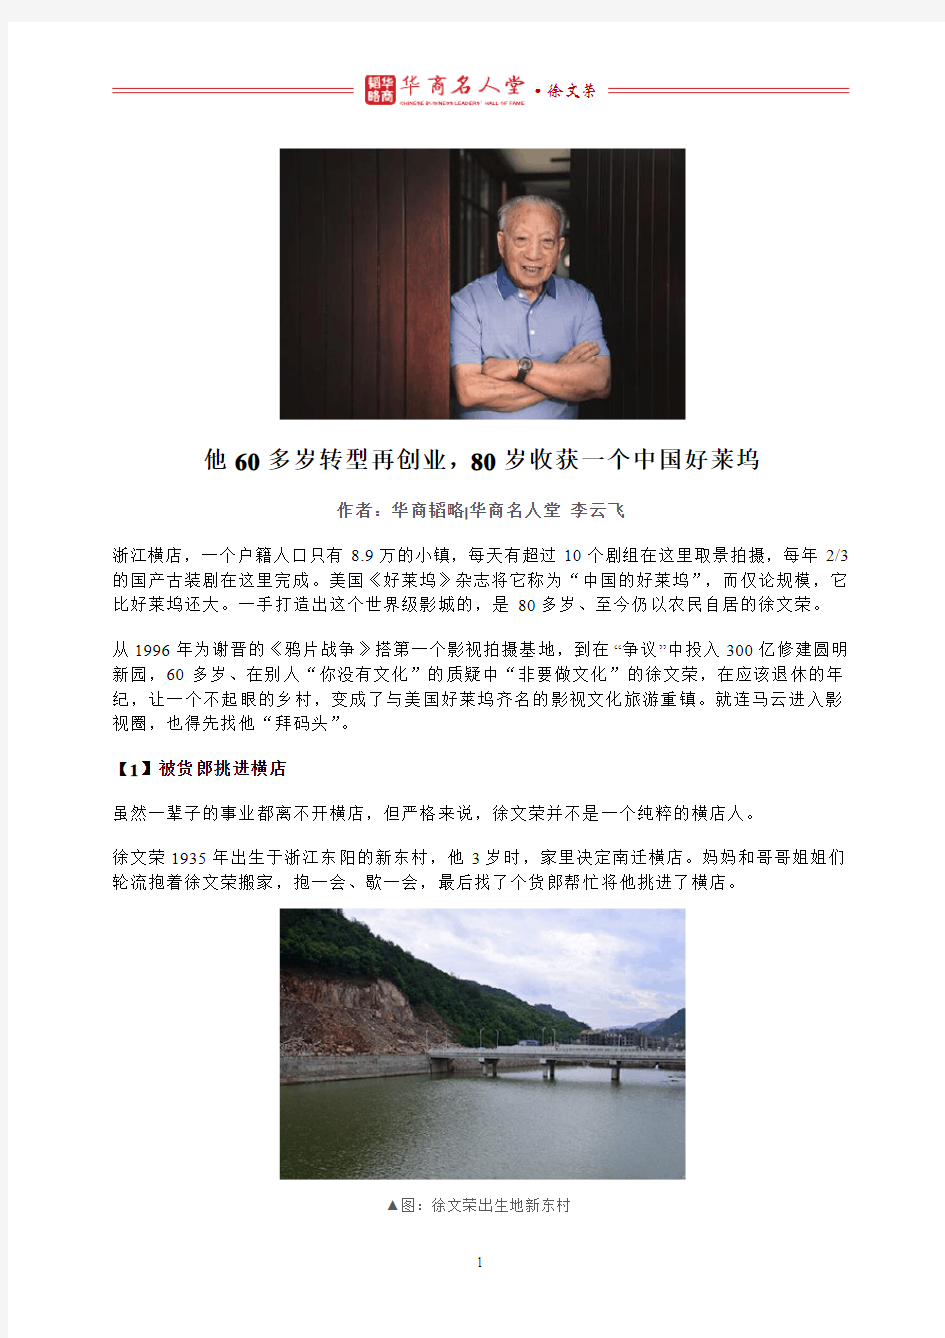 他60多岁转型再创业,80岁收获一个中国好莱坞